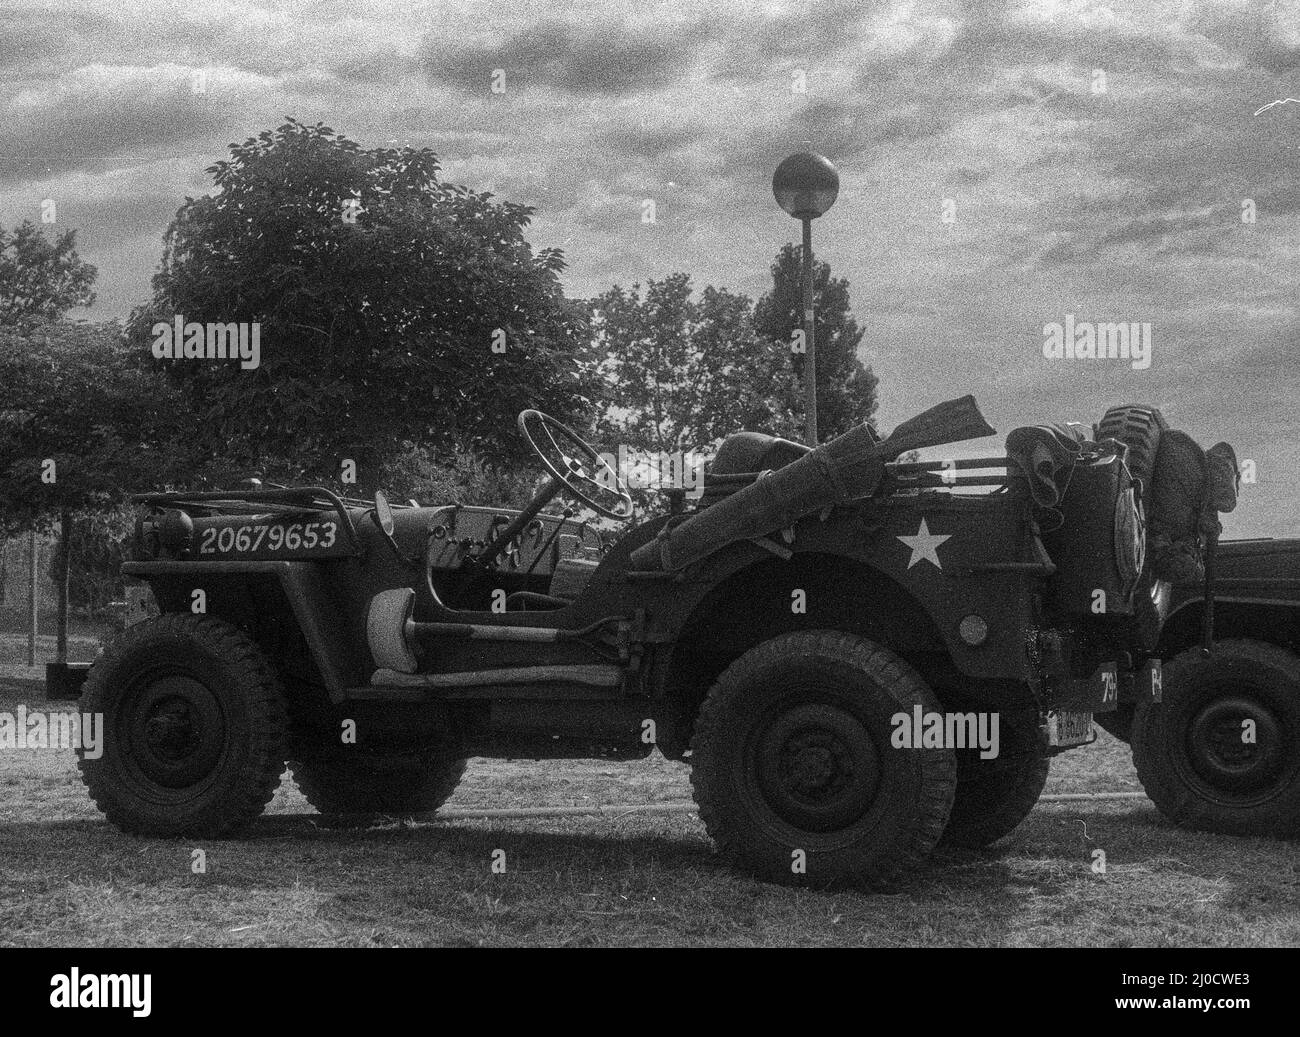 Gros plan d'un vus militaire classique Jeep Willys en niveaux de gris Banque D'Images